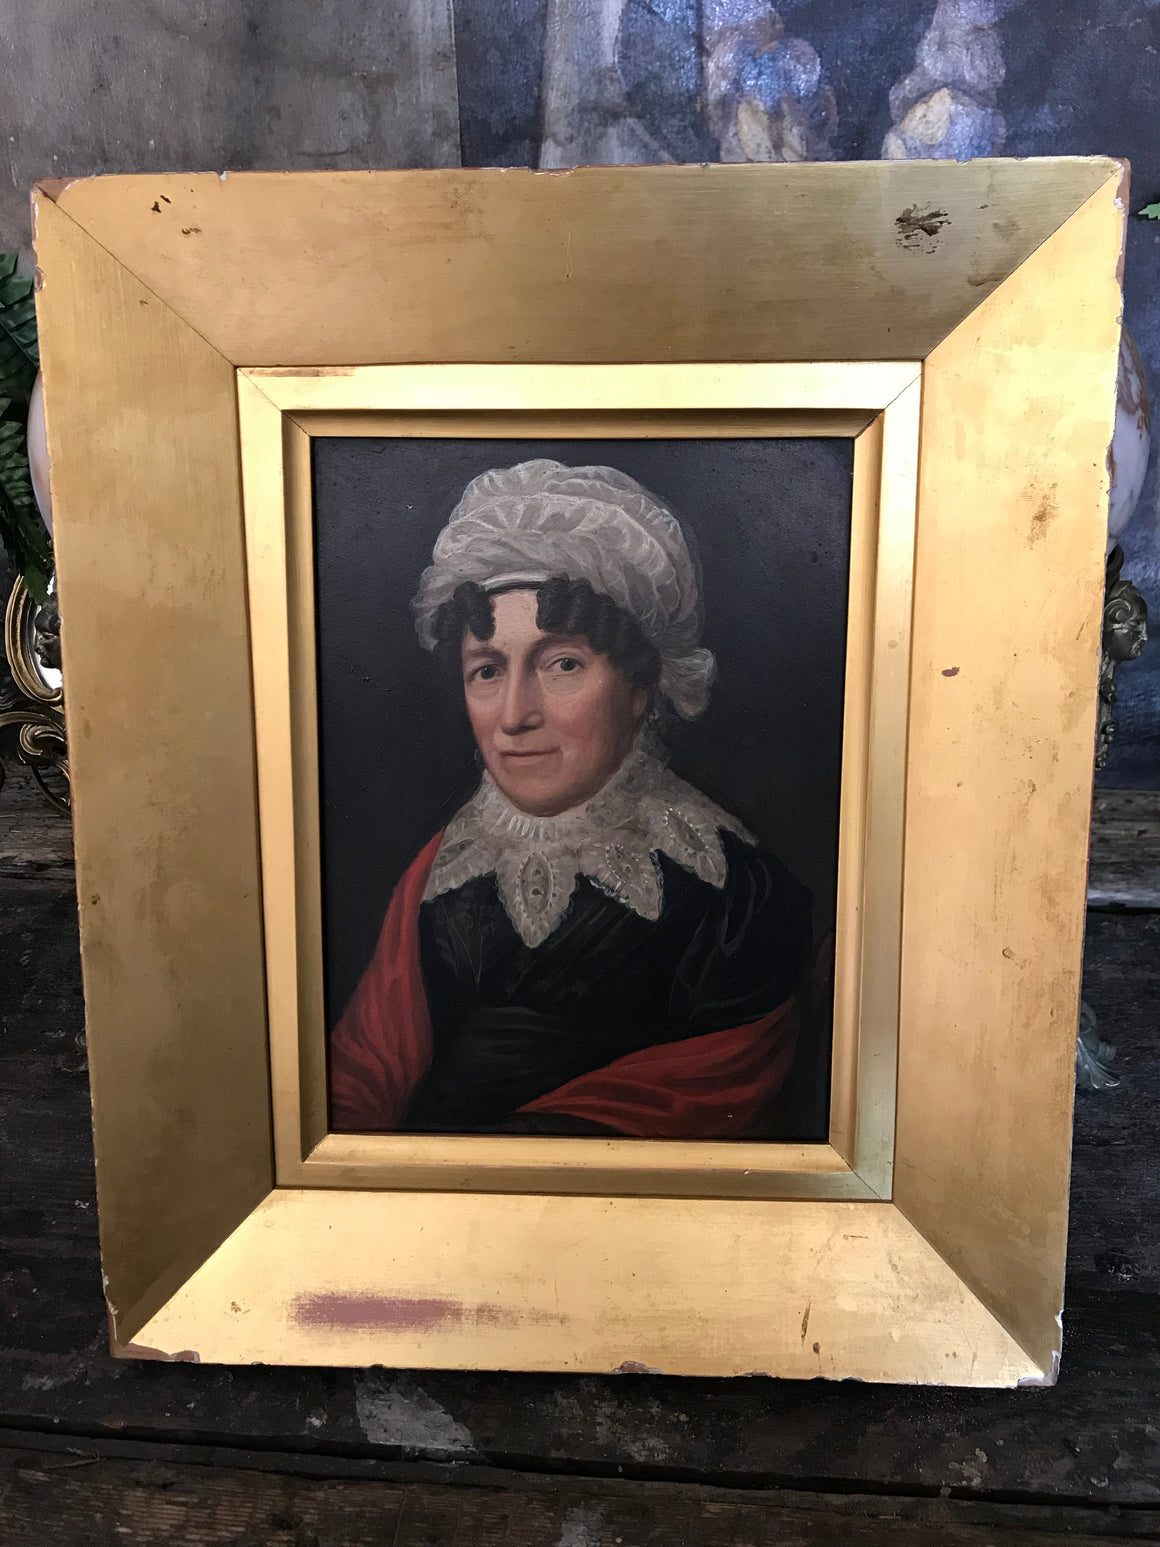 A Regency/Georgian oil on board portrait painting of an older lady